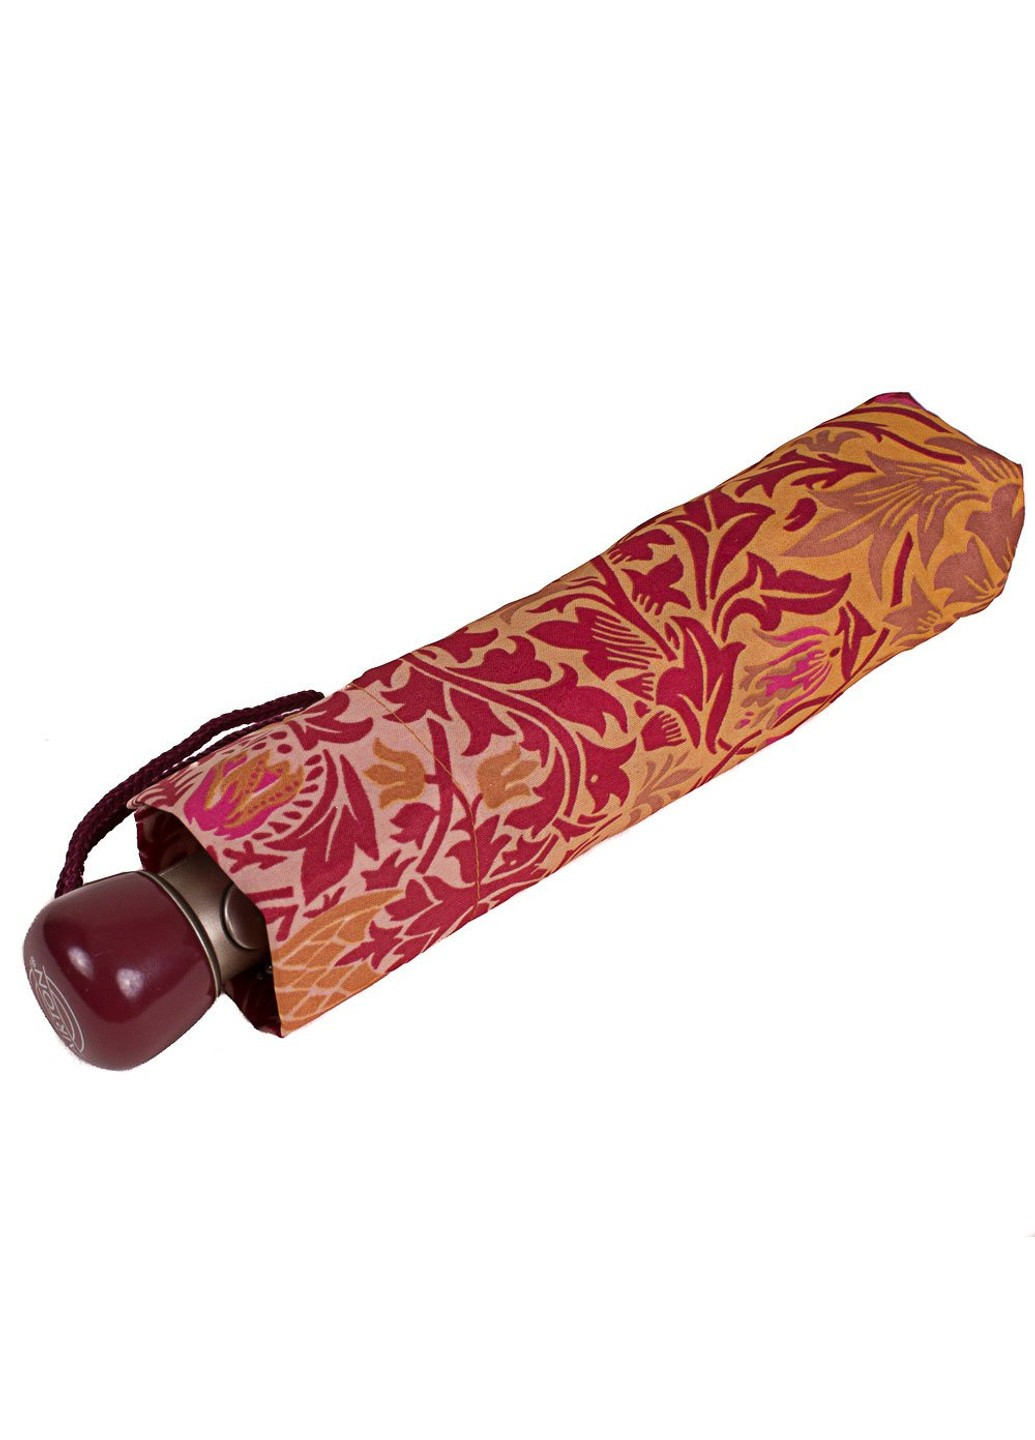 Міцний стильний помаранчевий жіноча парасолька напівавтомат Airton (262982700)